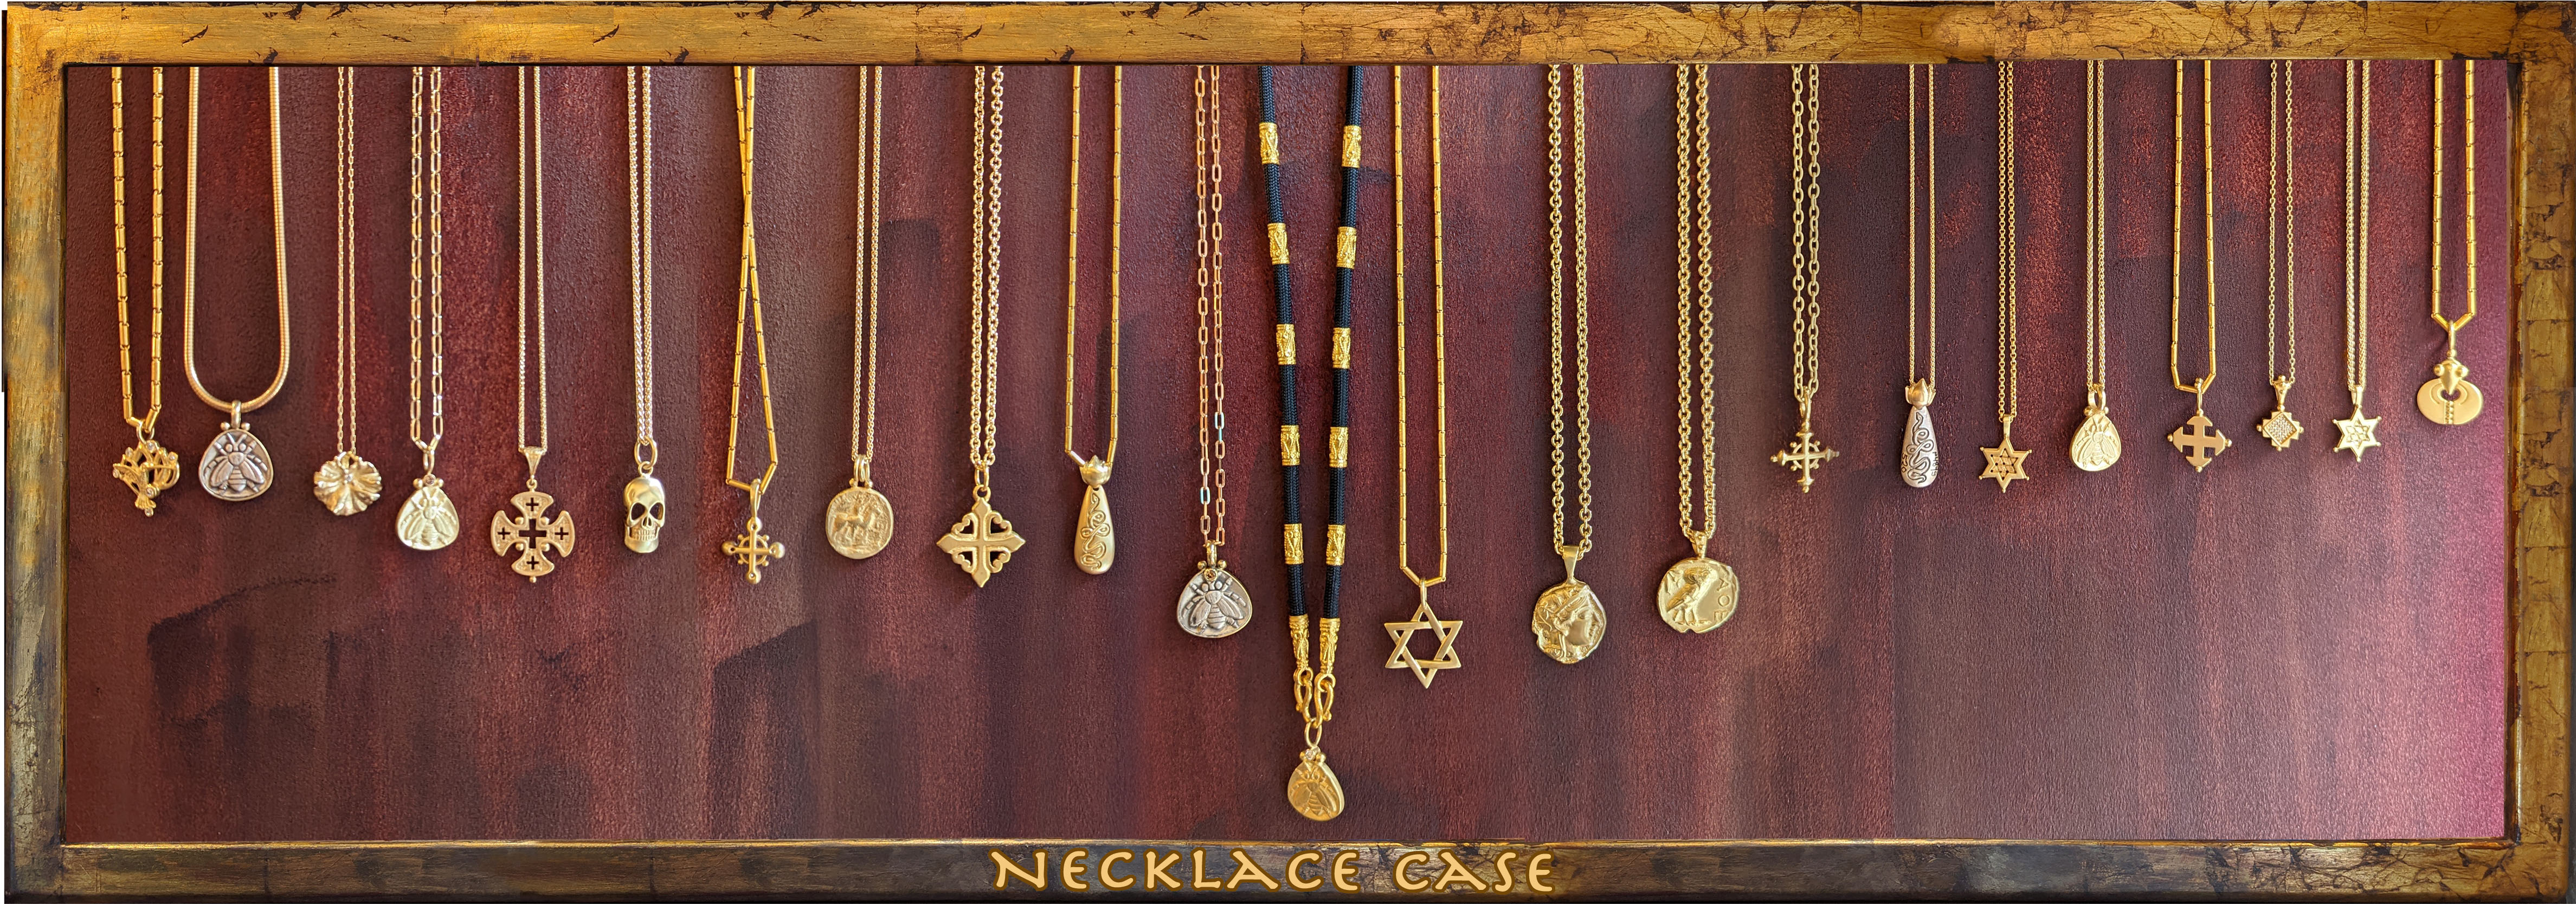 Necklace Case